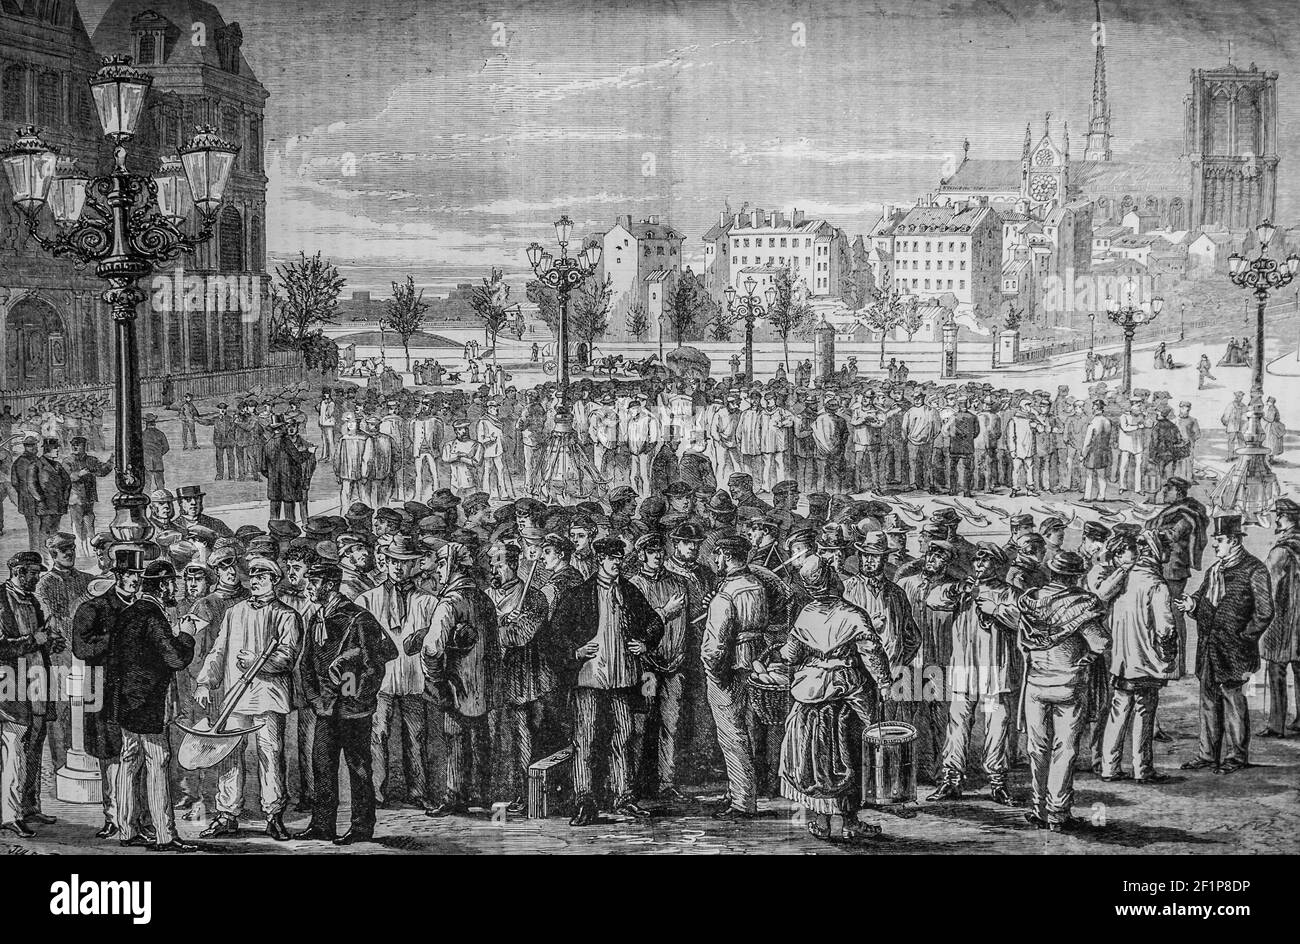 la foire aux maçons sur la Place de l'Hotel de ville a paris, l'univers illustre,editeur michele Levy 1869 Stockfoto